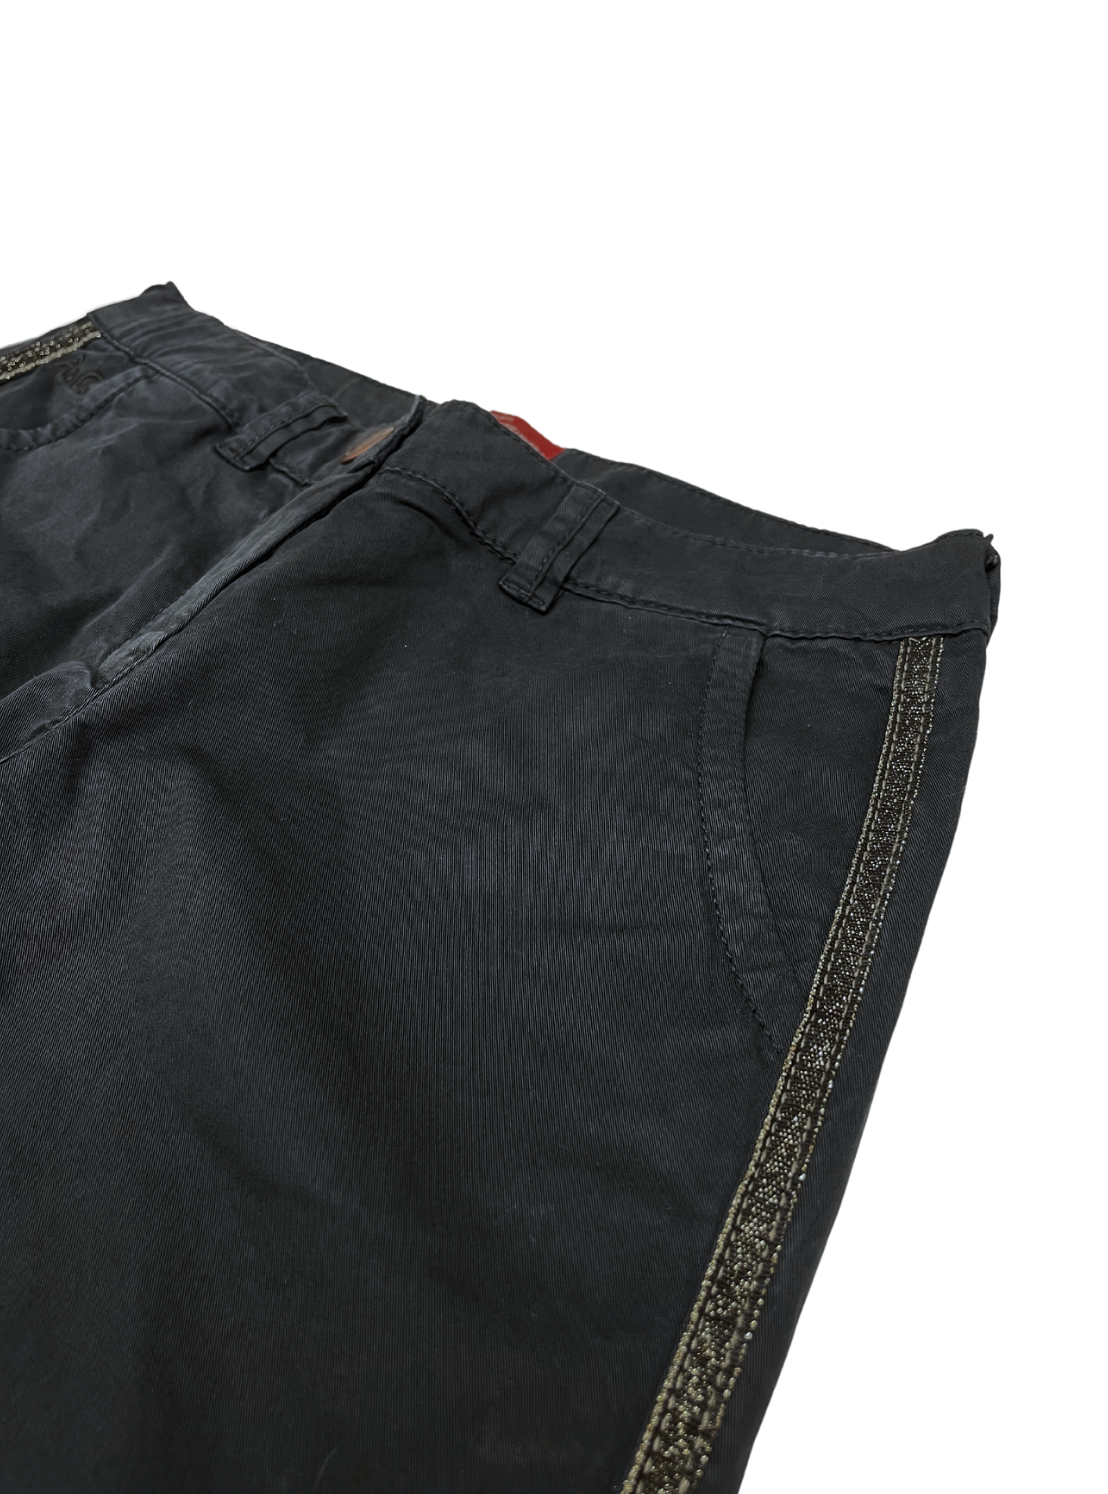 AMERICAN OUTFITTERS - Pantalon élastiqué noir à bandes pailletées - 8 ans